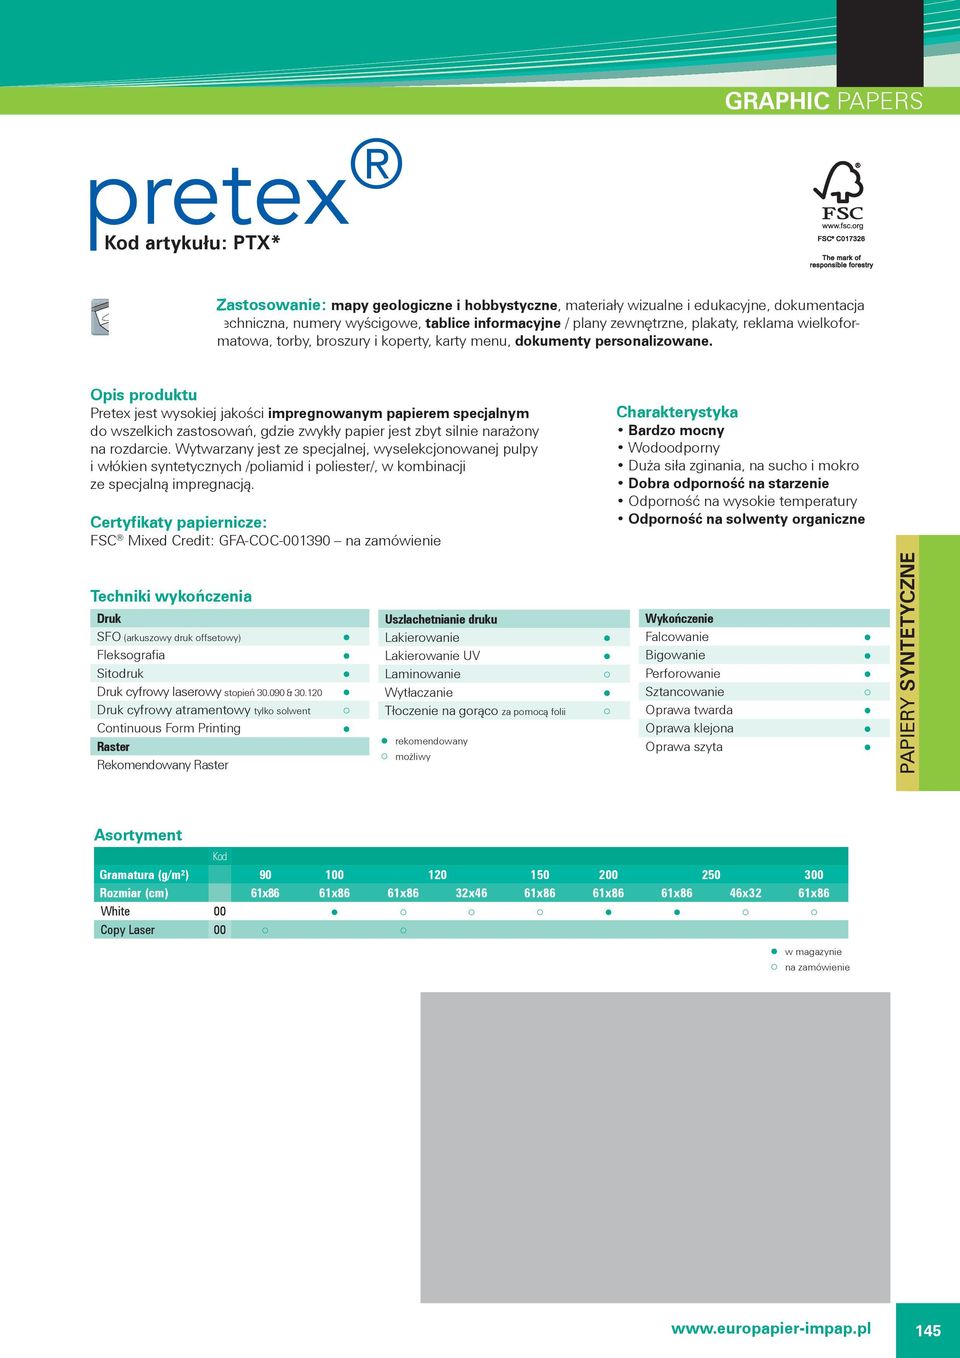 Pretex jest wysokiej jakości impregnowanym papierem specjalnym do wszelkich zastosowań, gdzie zwykły papier jest zbyt silnie narażony na rozdarcie.